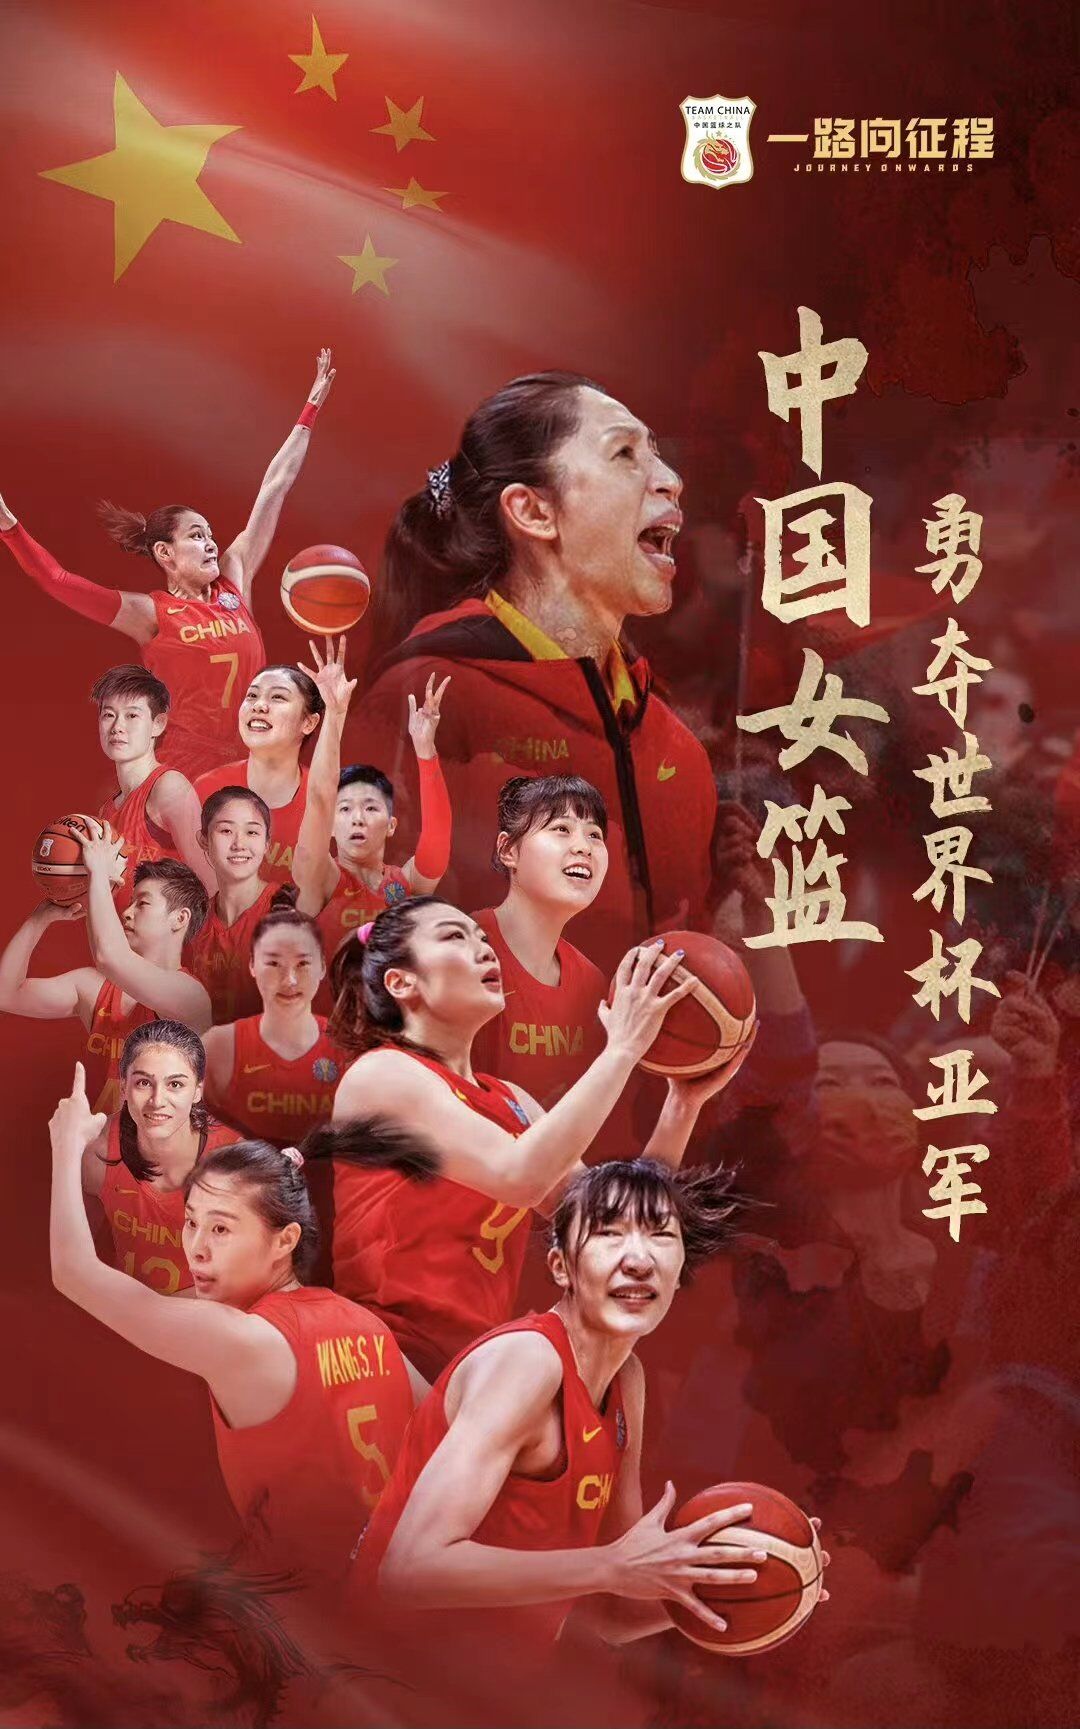 中国女篮逆转日本夺得女篮亚洲杯冠军 终结对手五连冠_PP视频体育频道